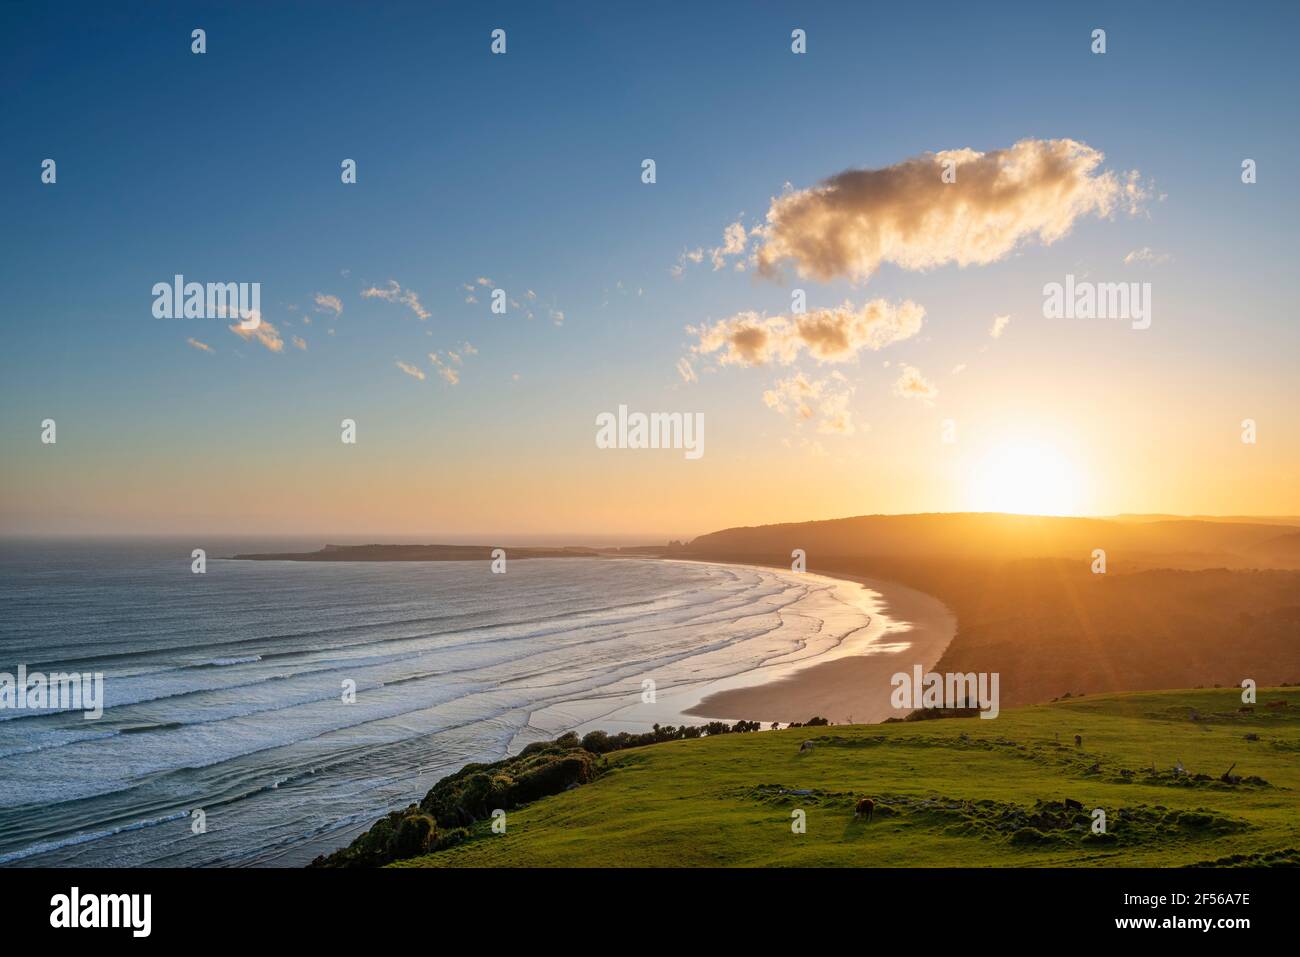 Nuova Zelanda, Otago, vista panoramica della spiaggia di Tautuku della baia di Tautuku vista dal punto panoramico di Firenze al tramonto Foto Stock